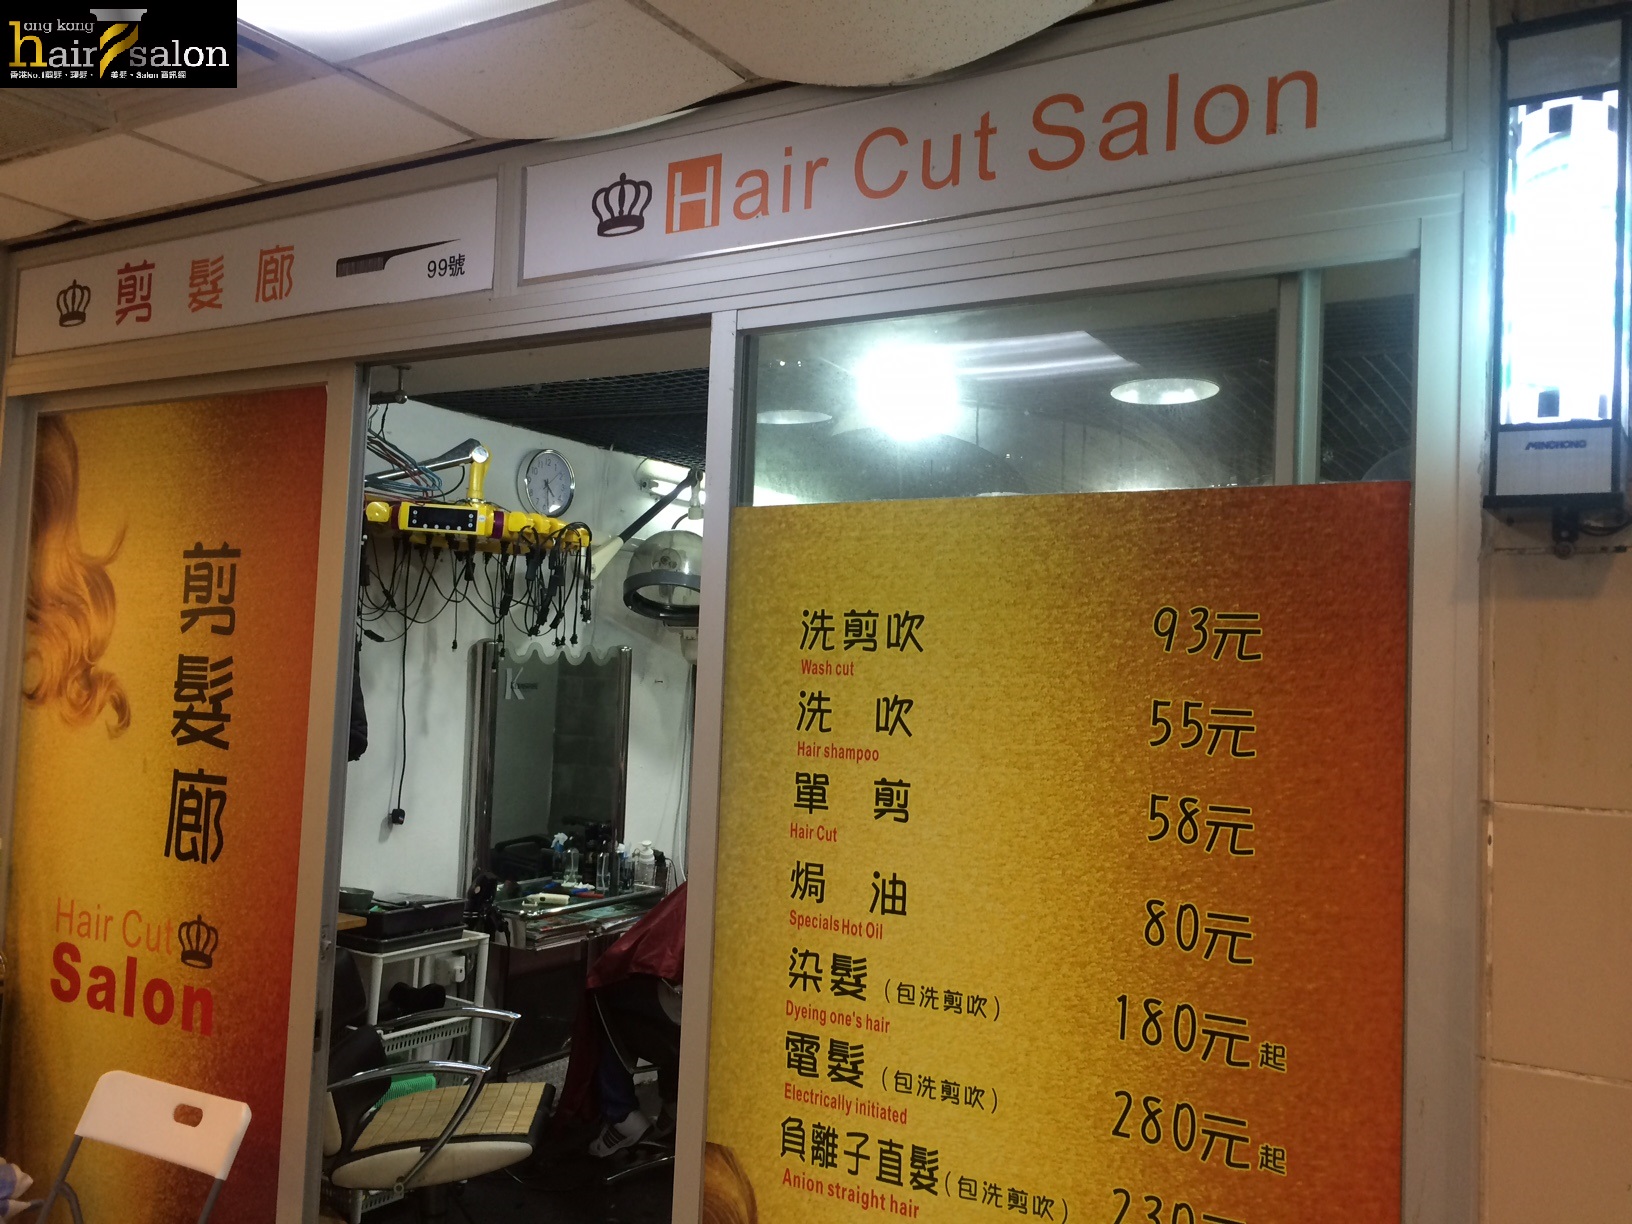 髮型屋 Salon: 剪髮廊 Hair Cut Salon